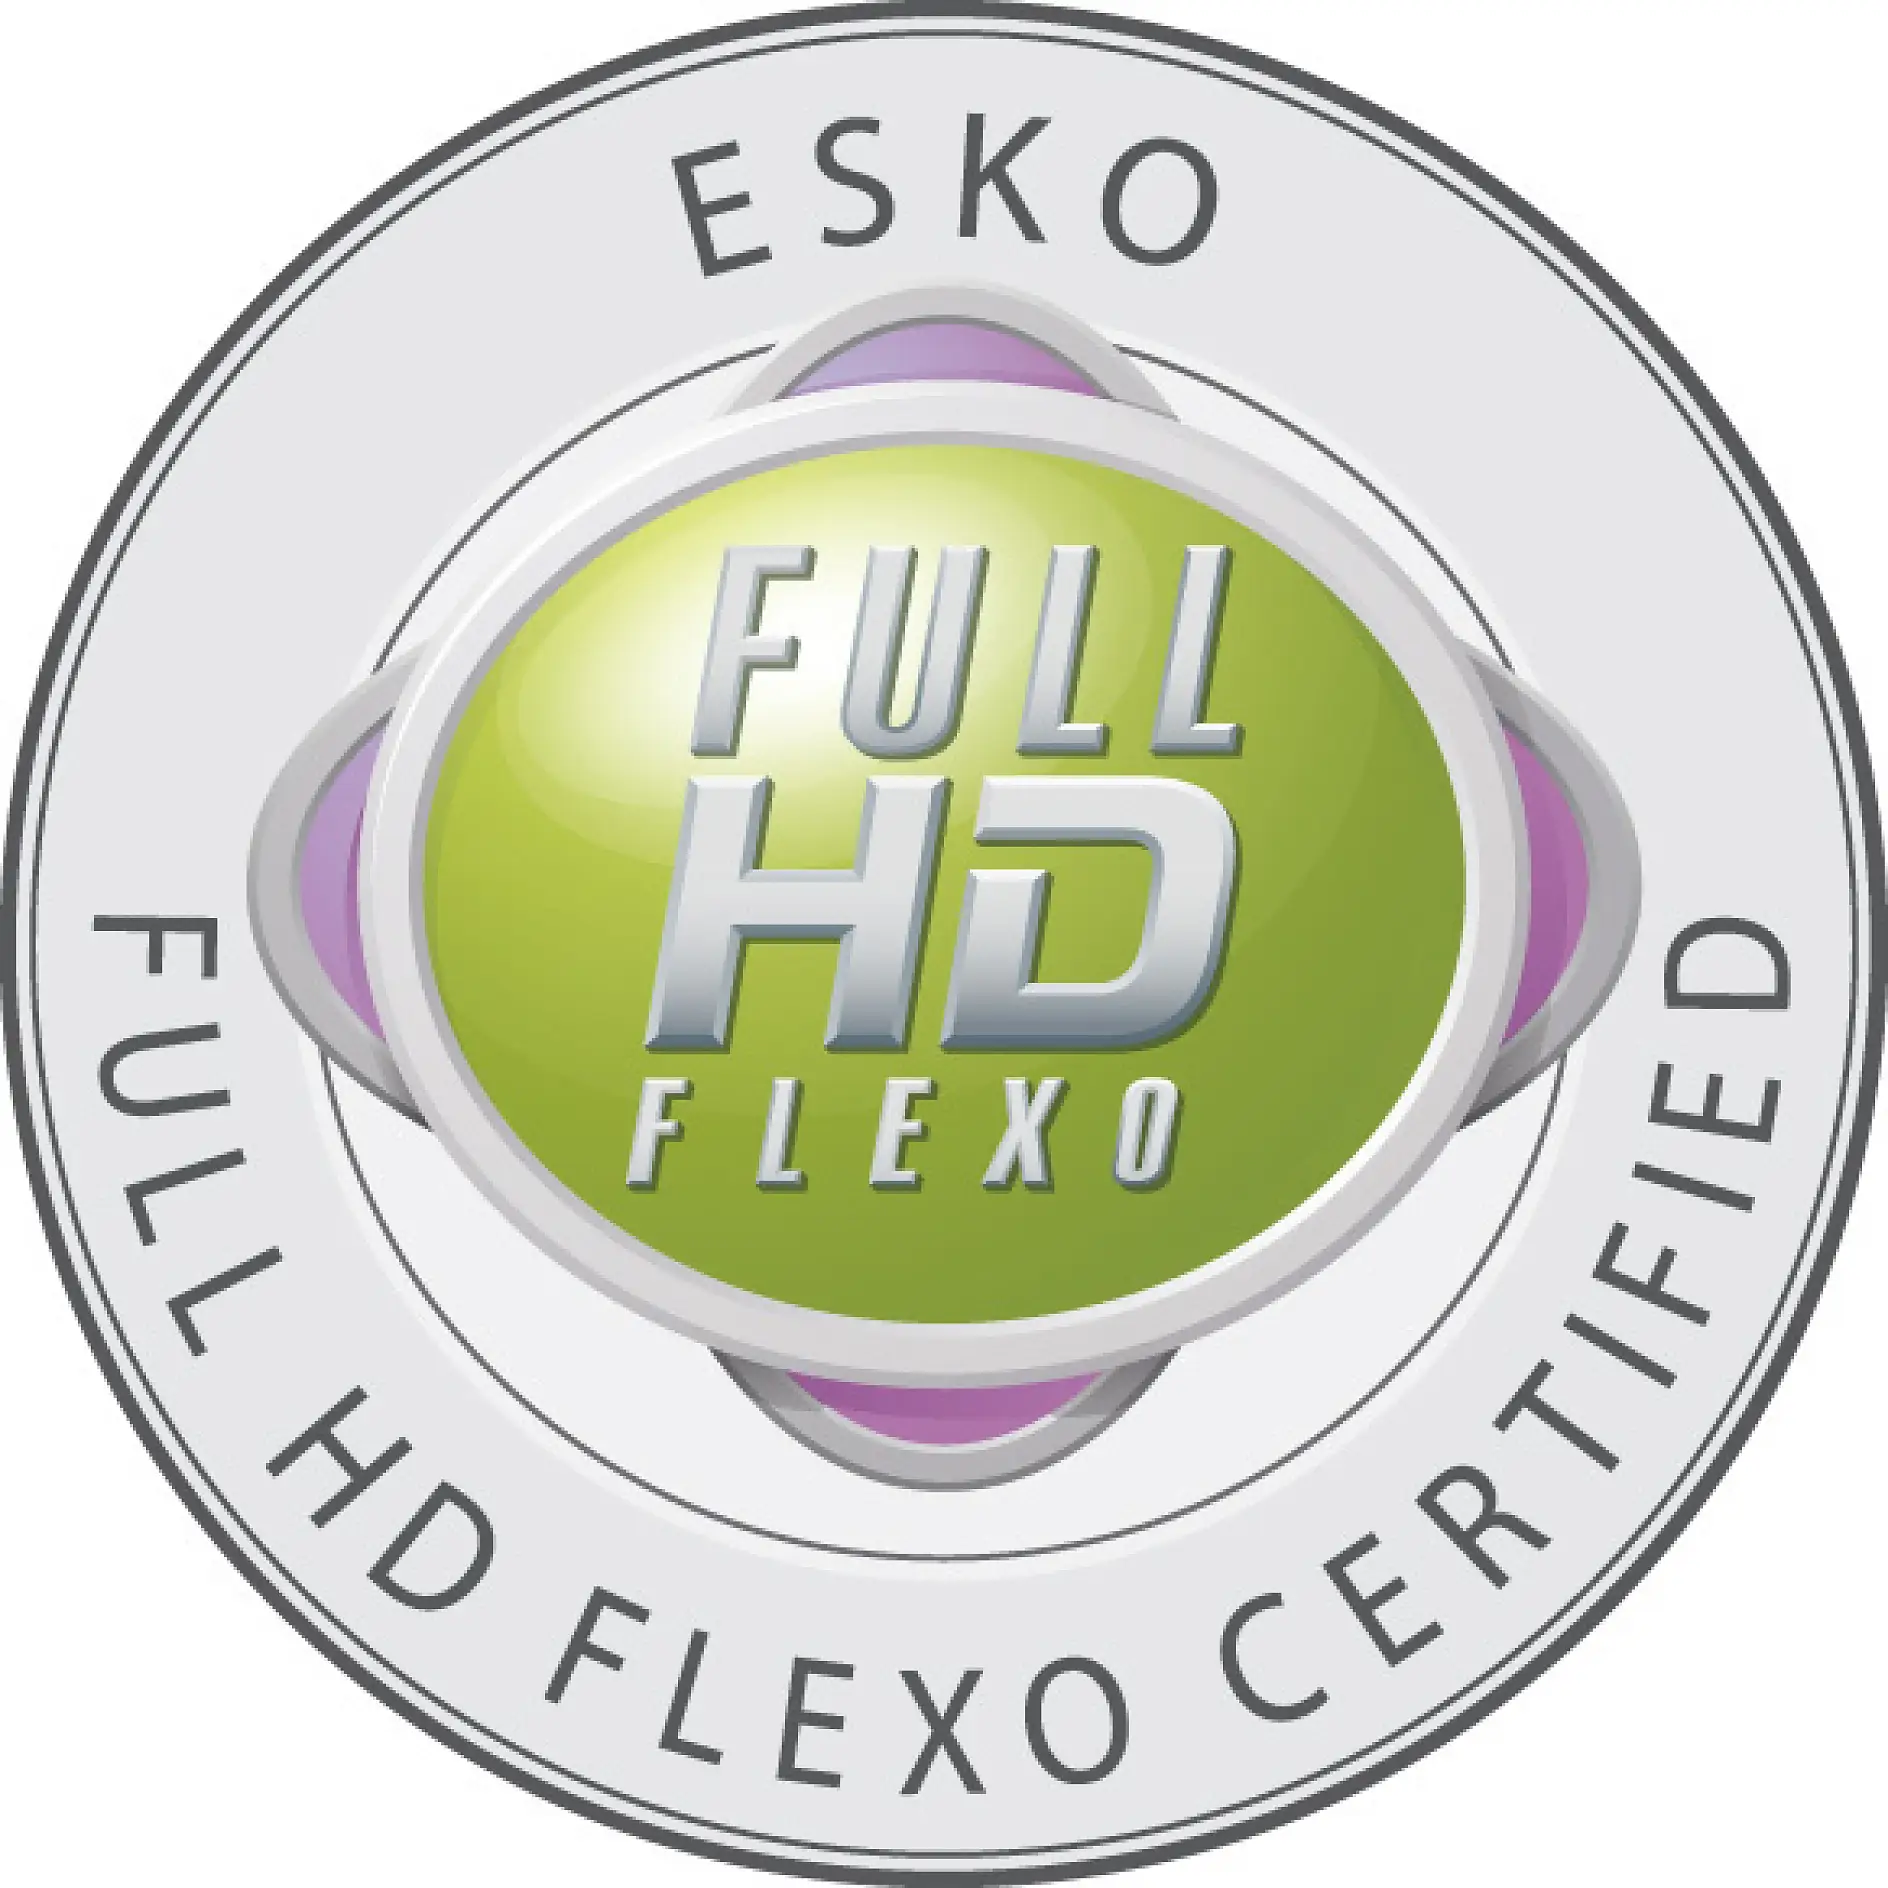 Označenie Full HD Flexo sú oprávnené používať len certifikované spoločnosti